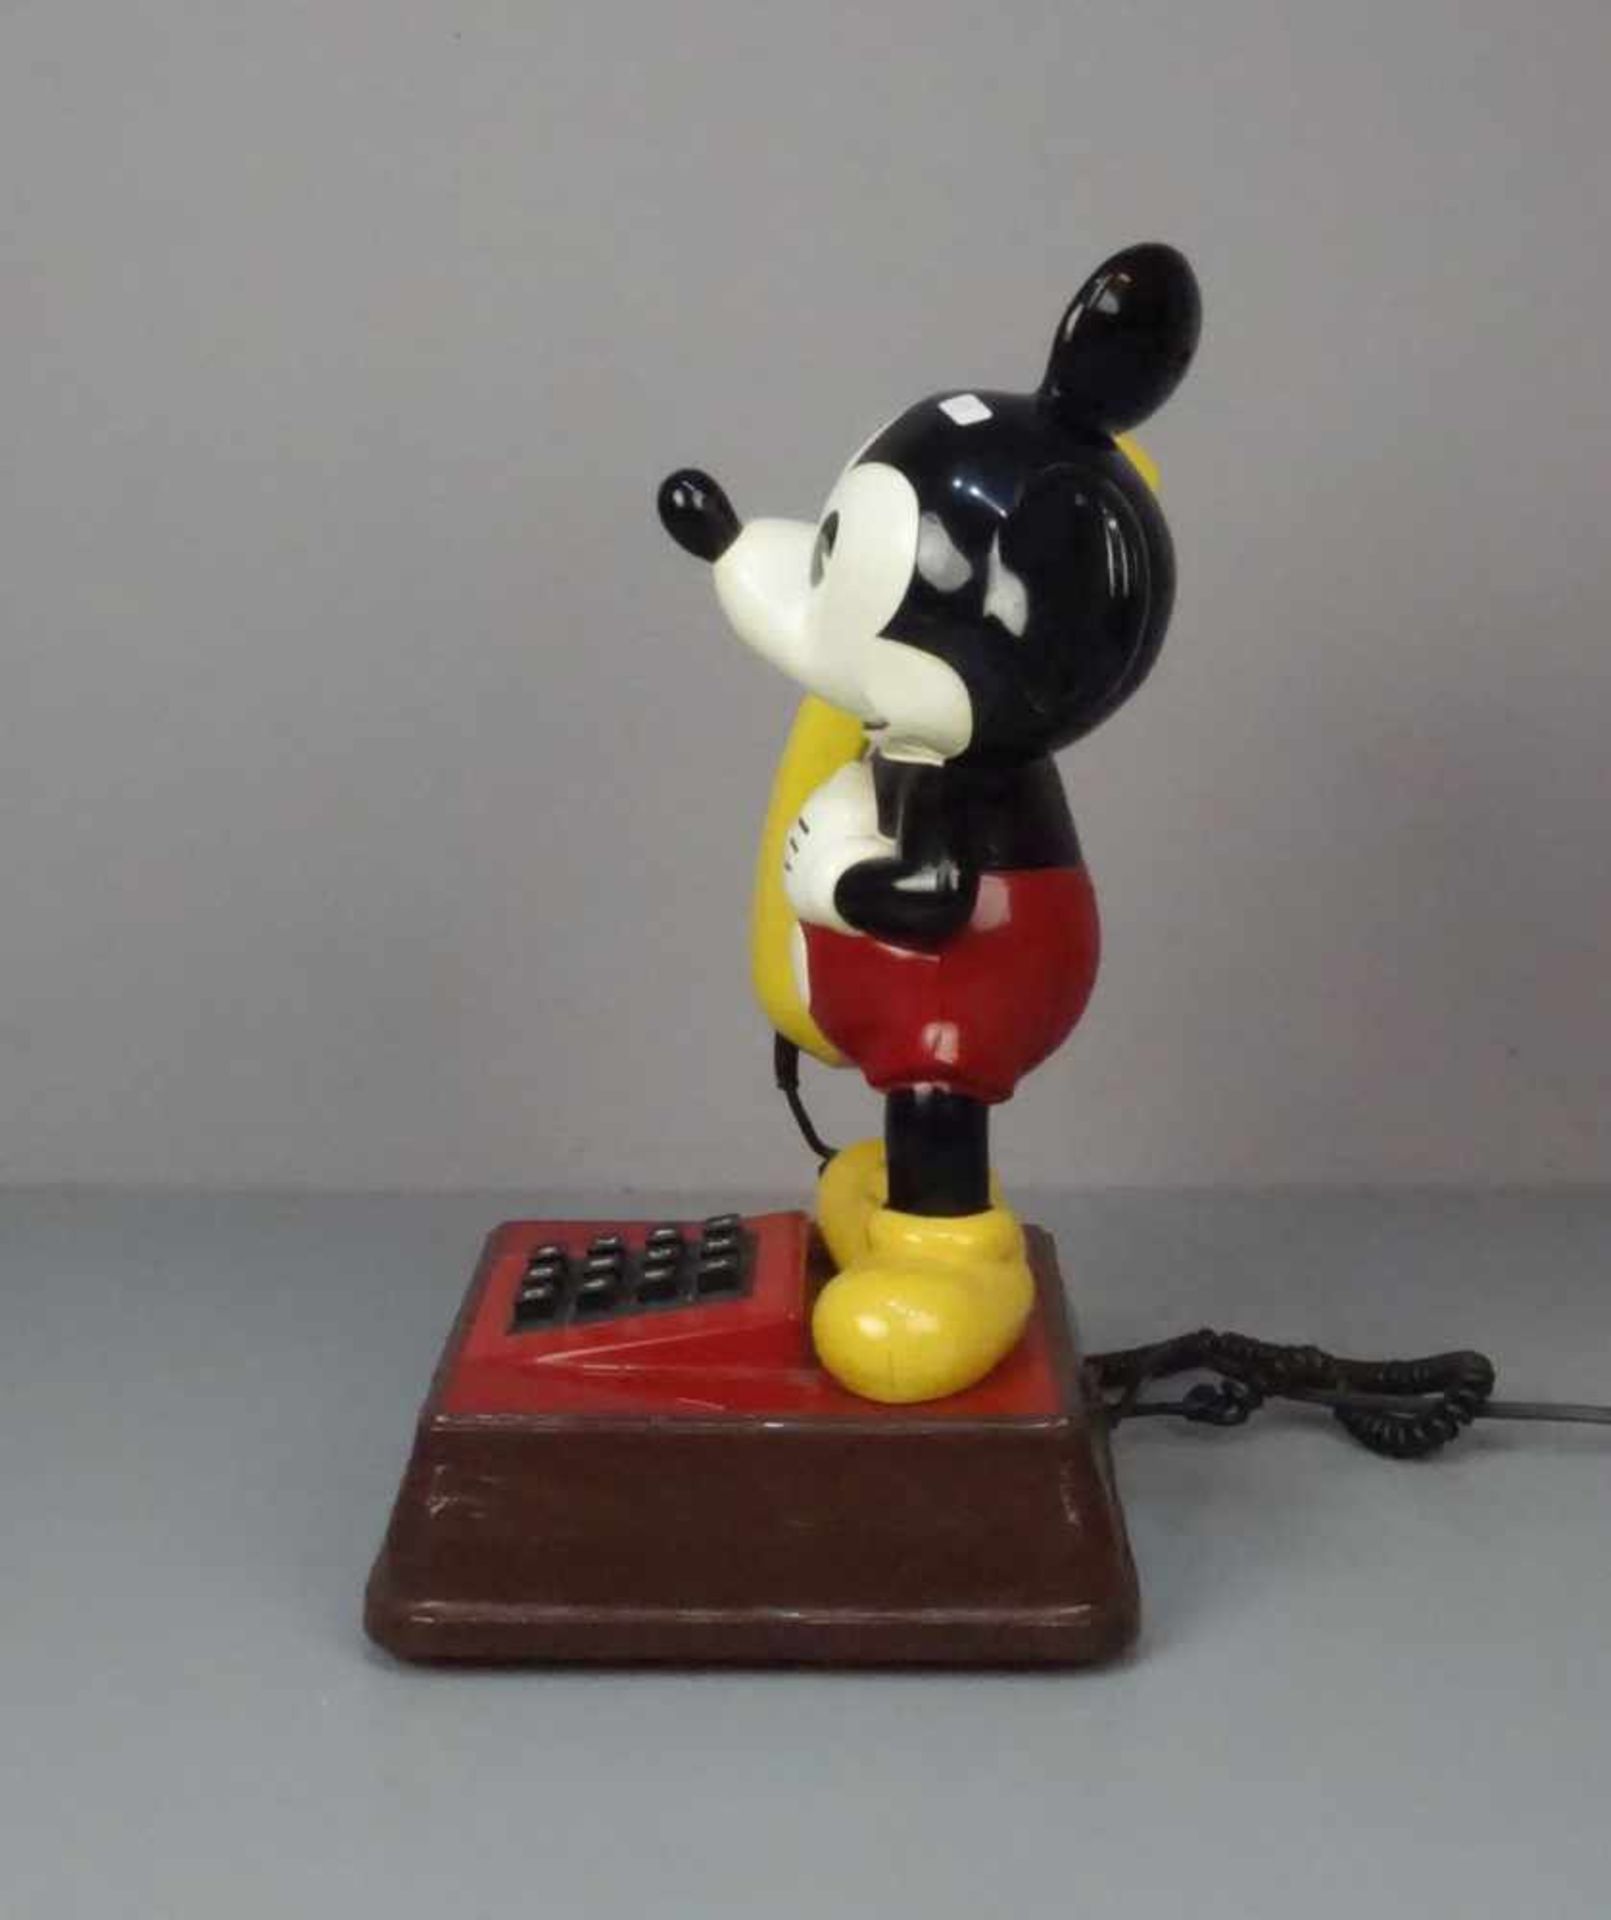 FIGÜRLICHES TELEFON "Micky Maus", 1970er Jahre, unter dem Stand bezeichnet "American - Image 4 of 5